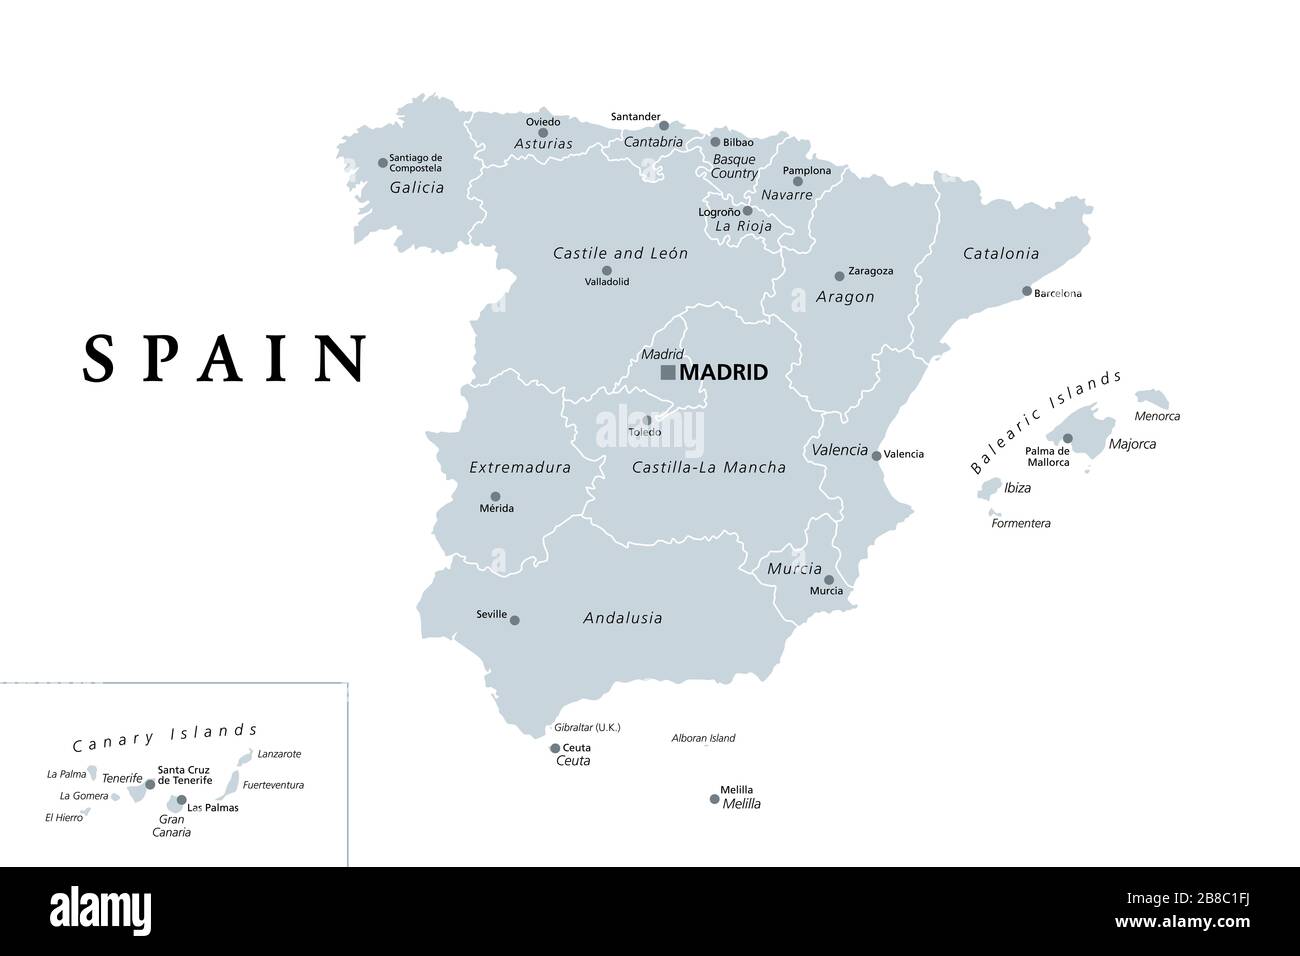 Spanien, graue politische Karte mit administrativen Unterteilungen. Königreich Spanien mit der Hauptstadt Madrid, den autonomen Gemeinden, Grenzen und Hauptstädten. Stockfoto